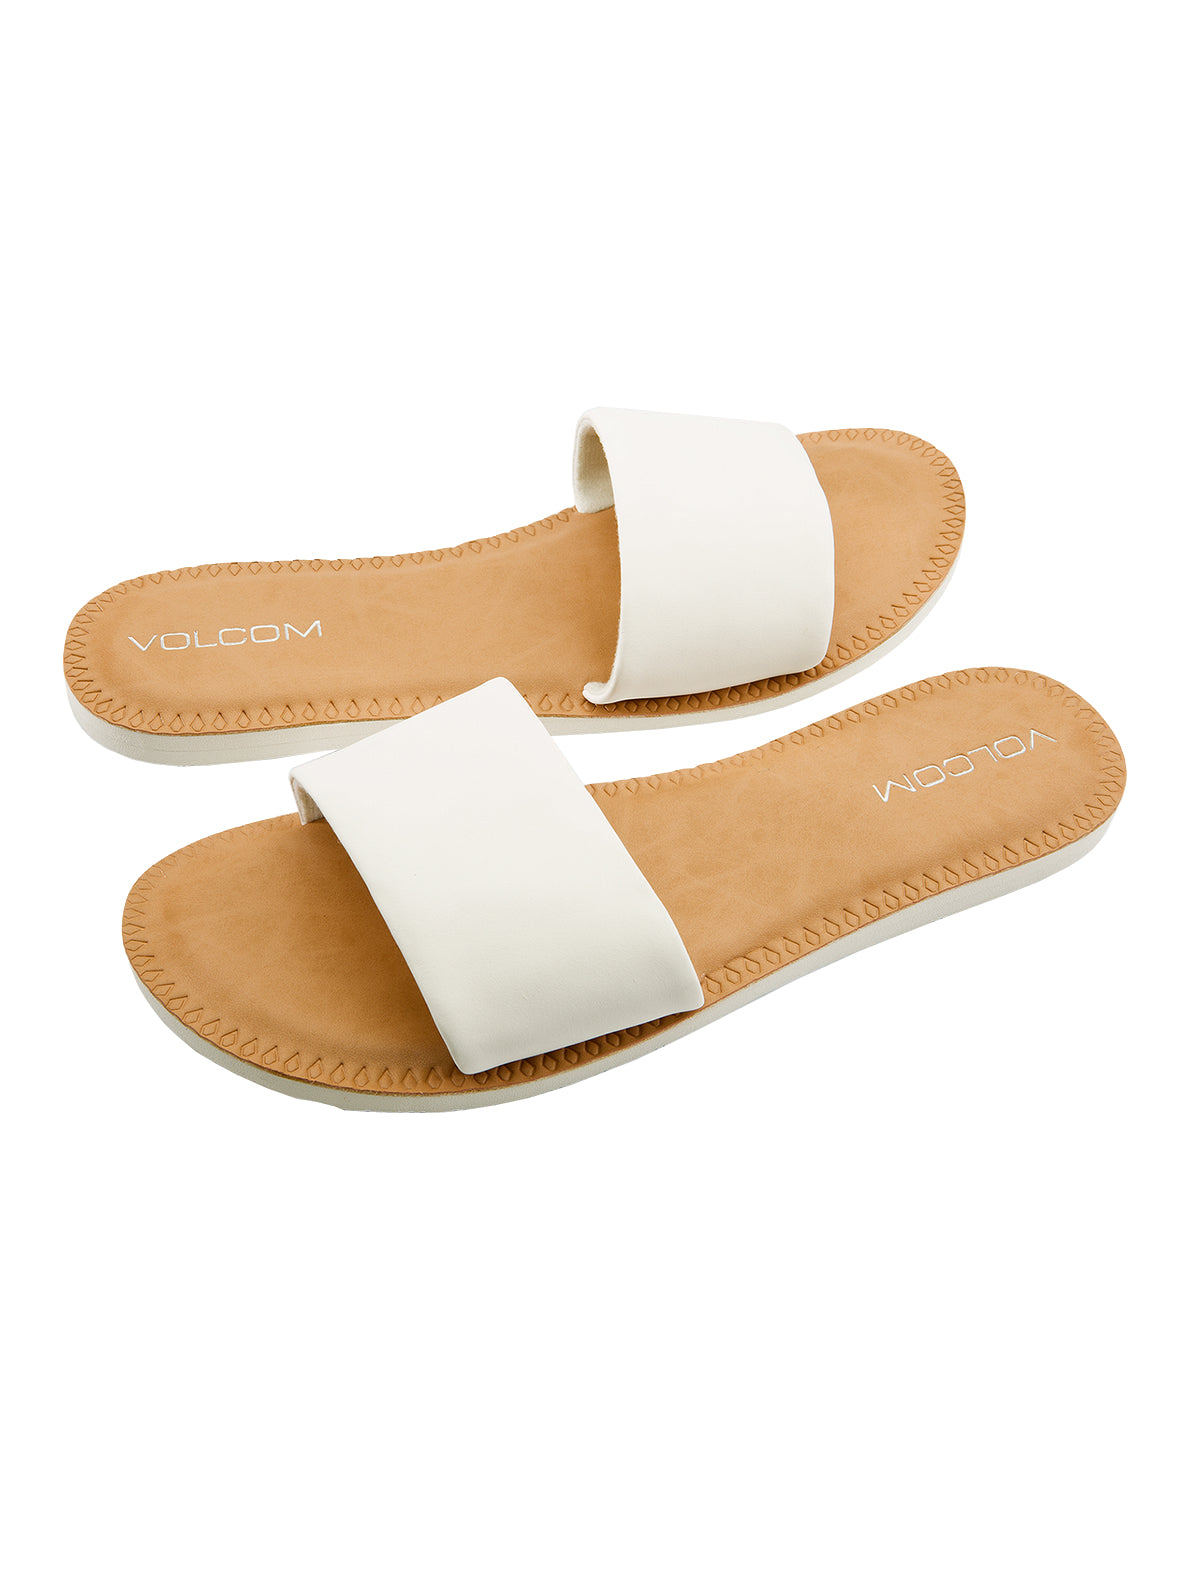 Volcom Simple Slide Womens Sandal WHT23-White 7